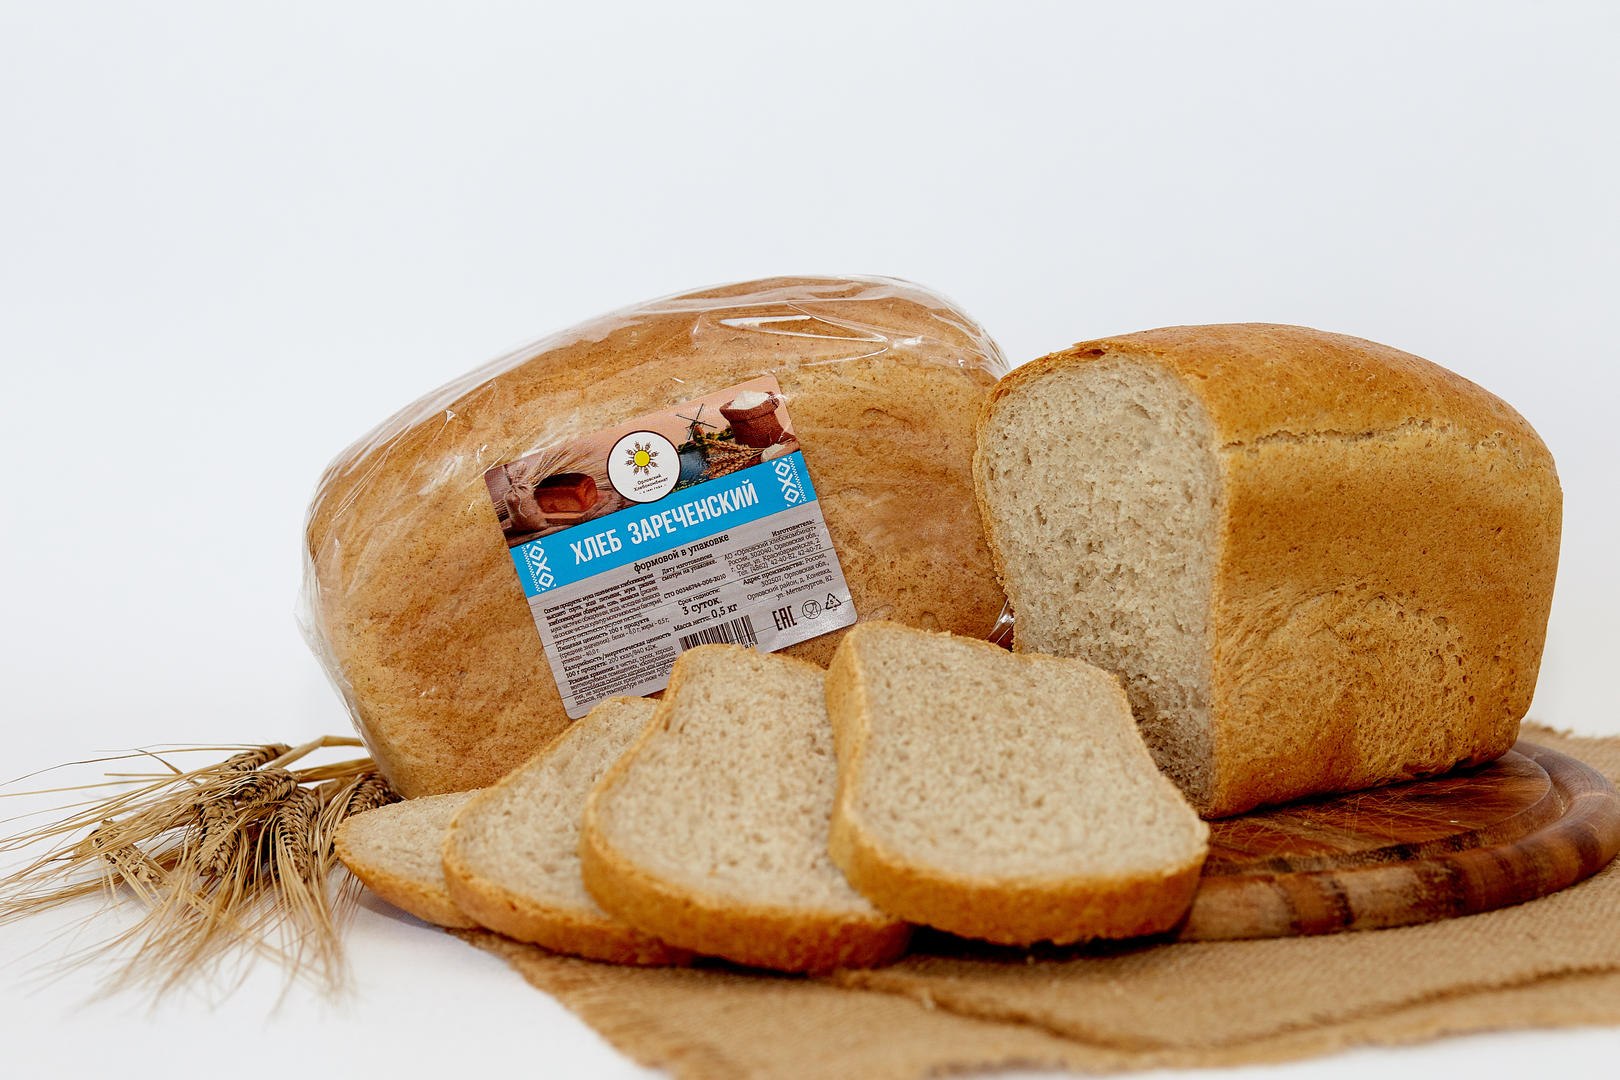 Нужно купить хлеб. Хлеб пшеничный формовой 600г /Сенеж хлеб/. Хлеб ИП Головко «пшеничный». АРЗАНДА хлеб. Хлеб ржано-пшеничный обогащенный.